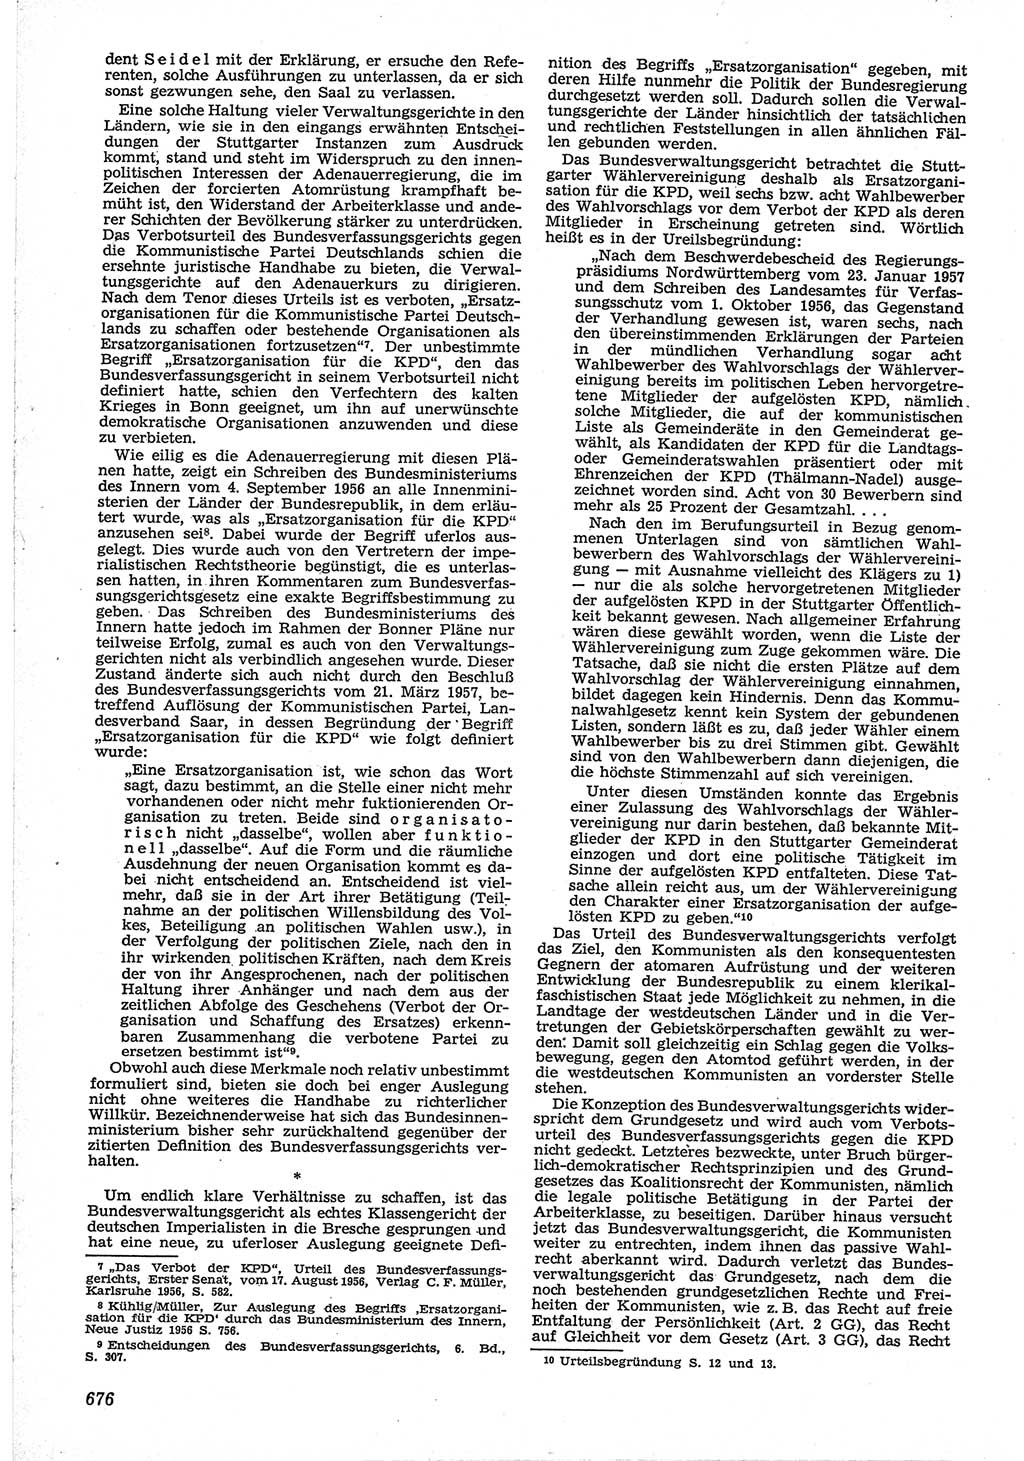 Neue Justiz (NJ), Zeitschrift für Recht und Rechtswissenschaft [Deutsche Demokratische Republik (DDR)], 12. Jahrgang 1958, Seite 676 (NJ DDR 1958, S. 676)